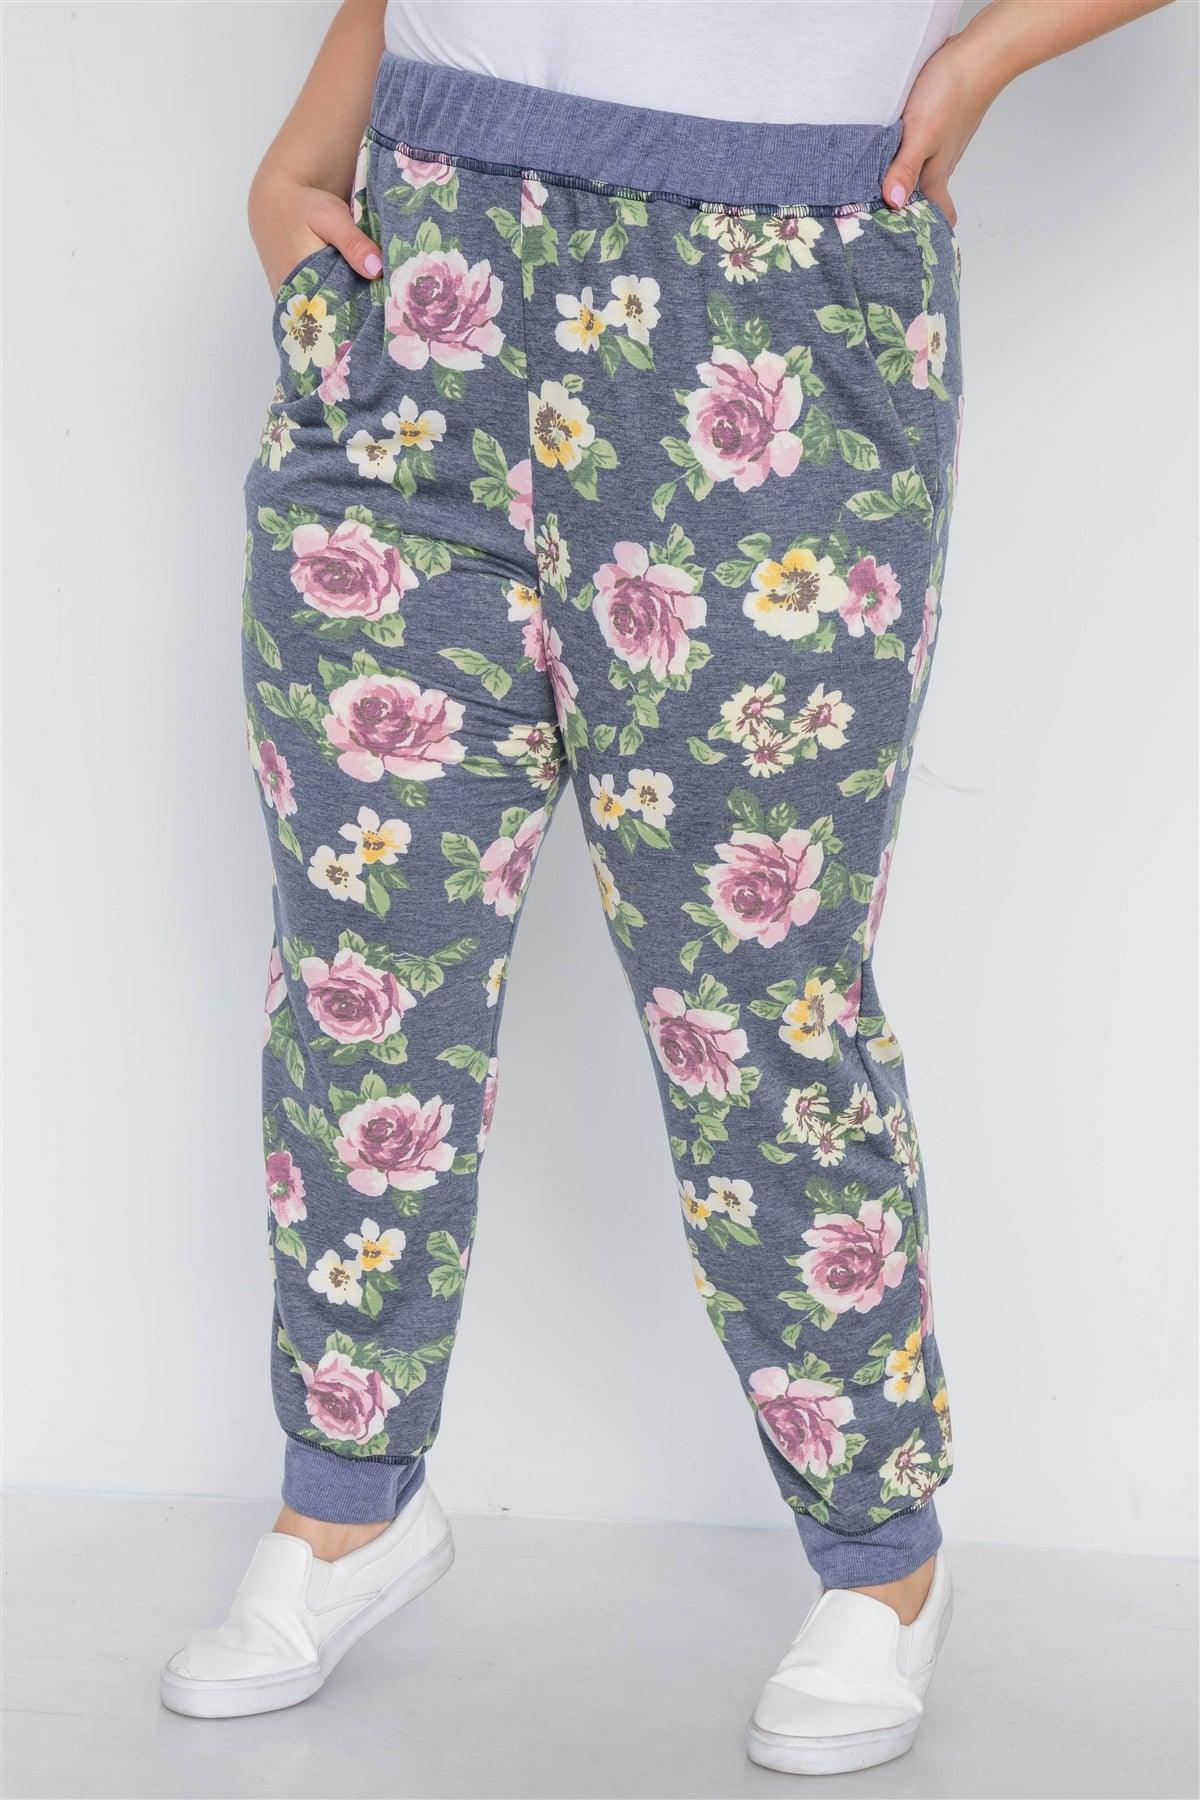 Plus Size Blue Floral Print Knit Joggers Pants /3-2-1